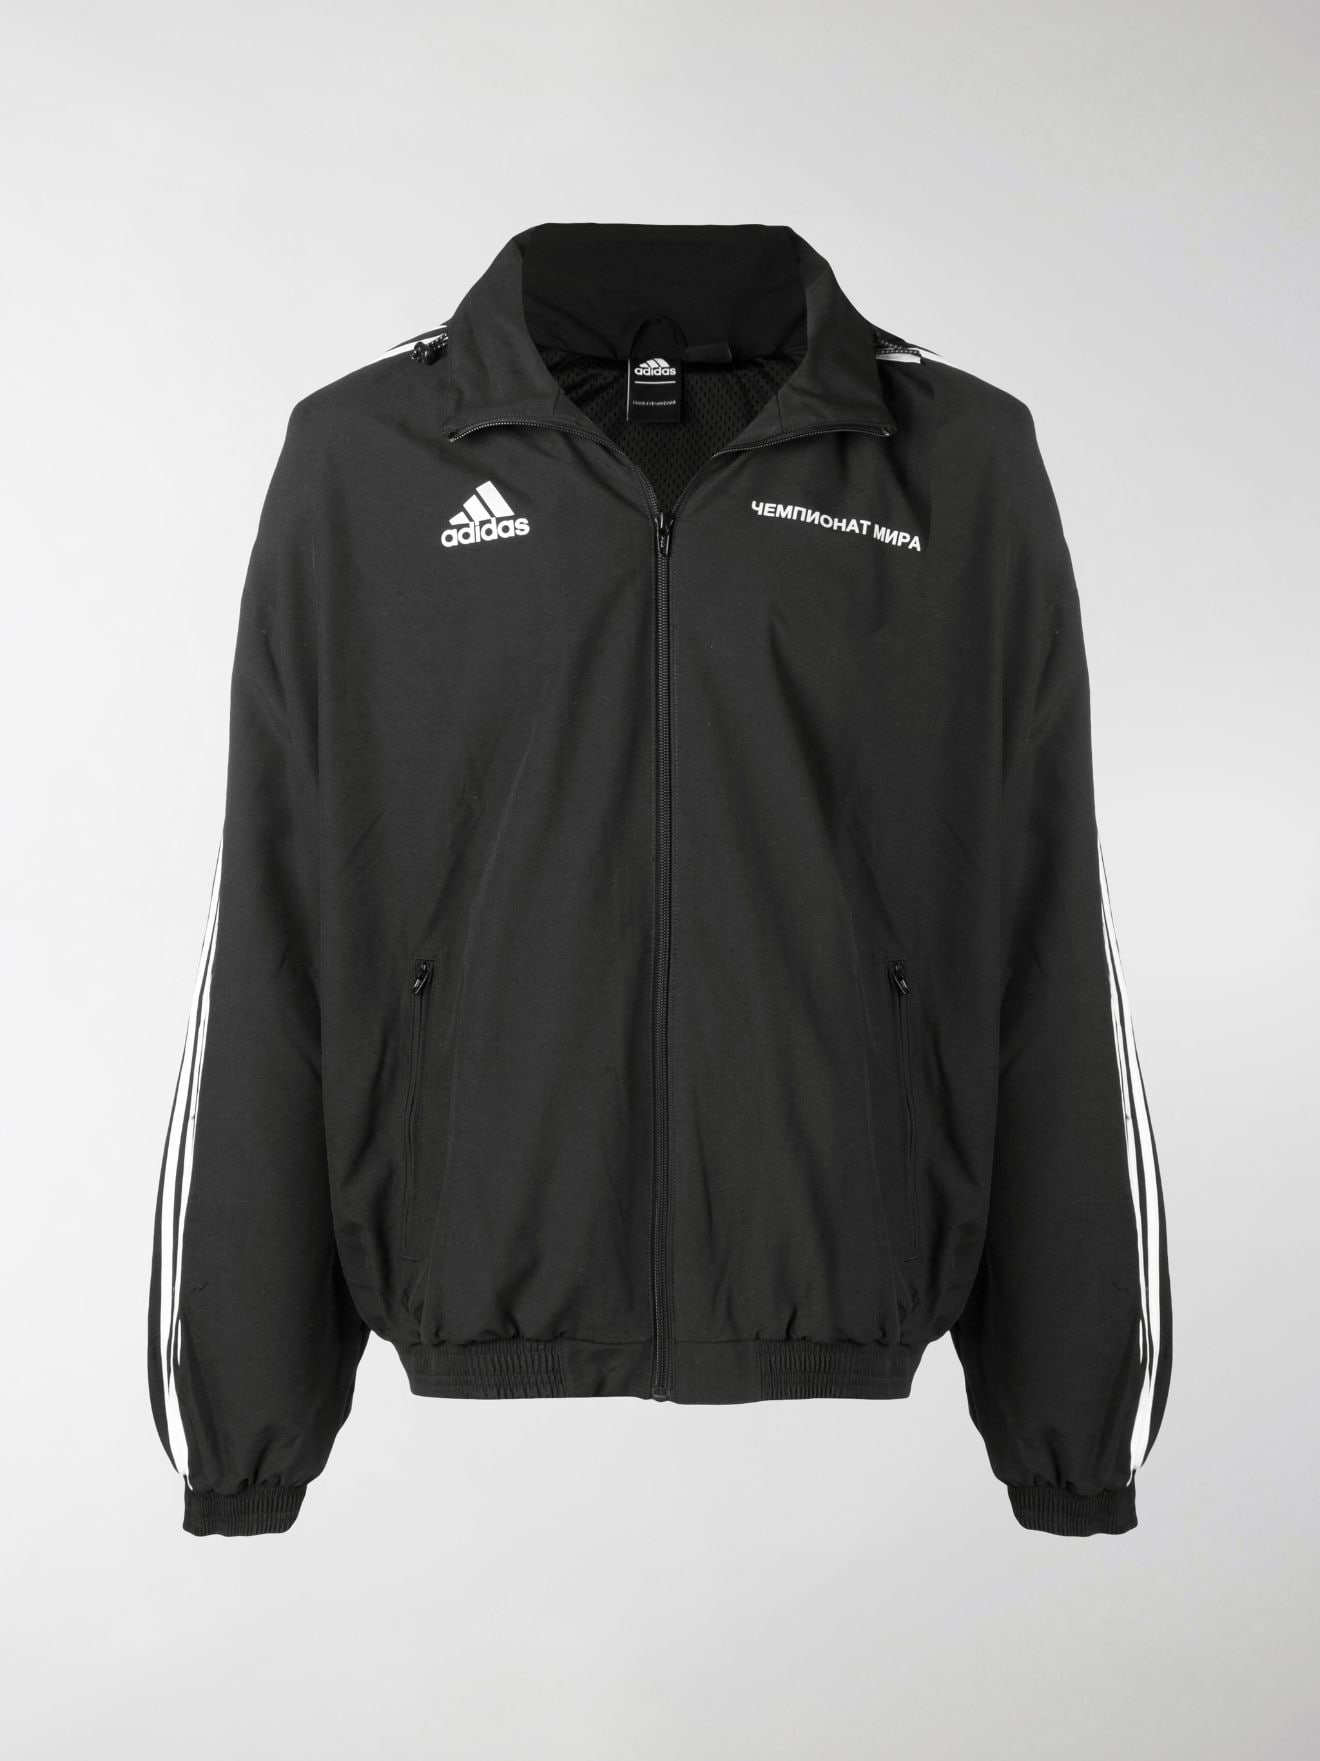 Gosha Rubchinskiy Gosha Rubchinskiy X Adidas sport jacket black | MODES